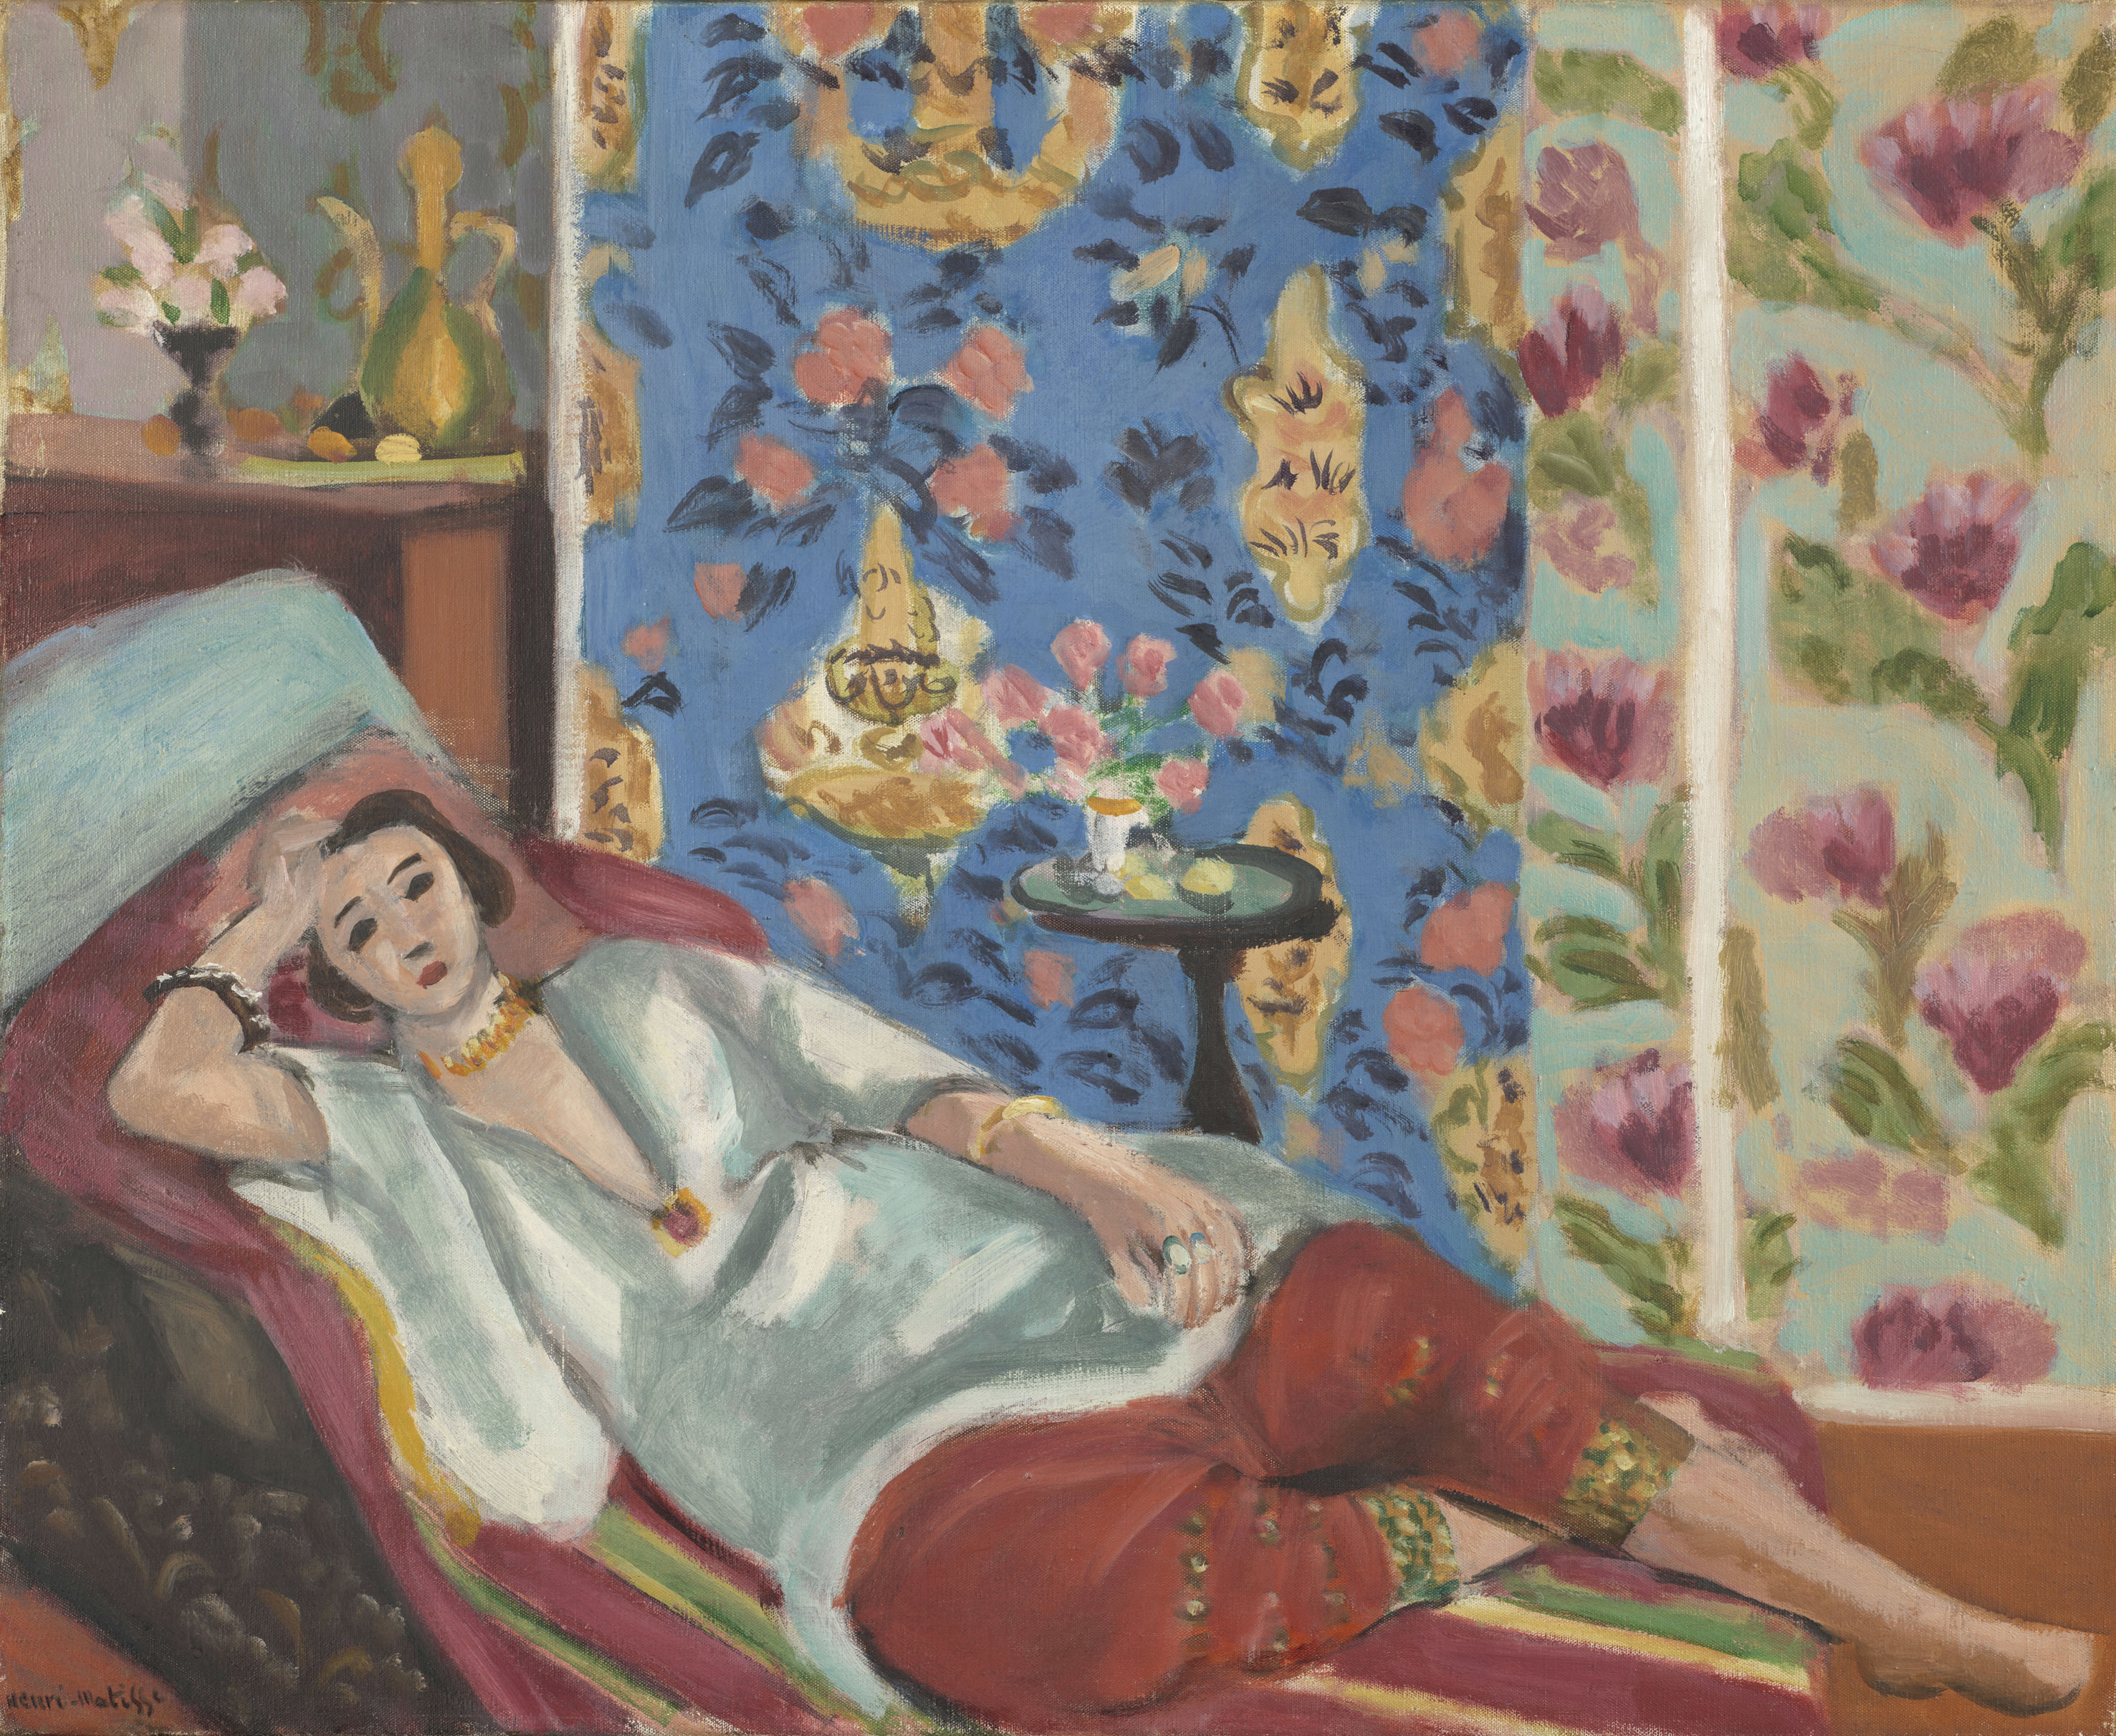 アンリ・マティス《赤いキュロットのオダリスク》1924-1925年頃、油彩・カンヴァス、50×61cm、オランジュリー美術館